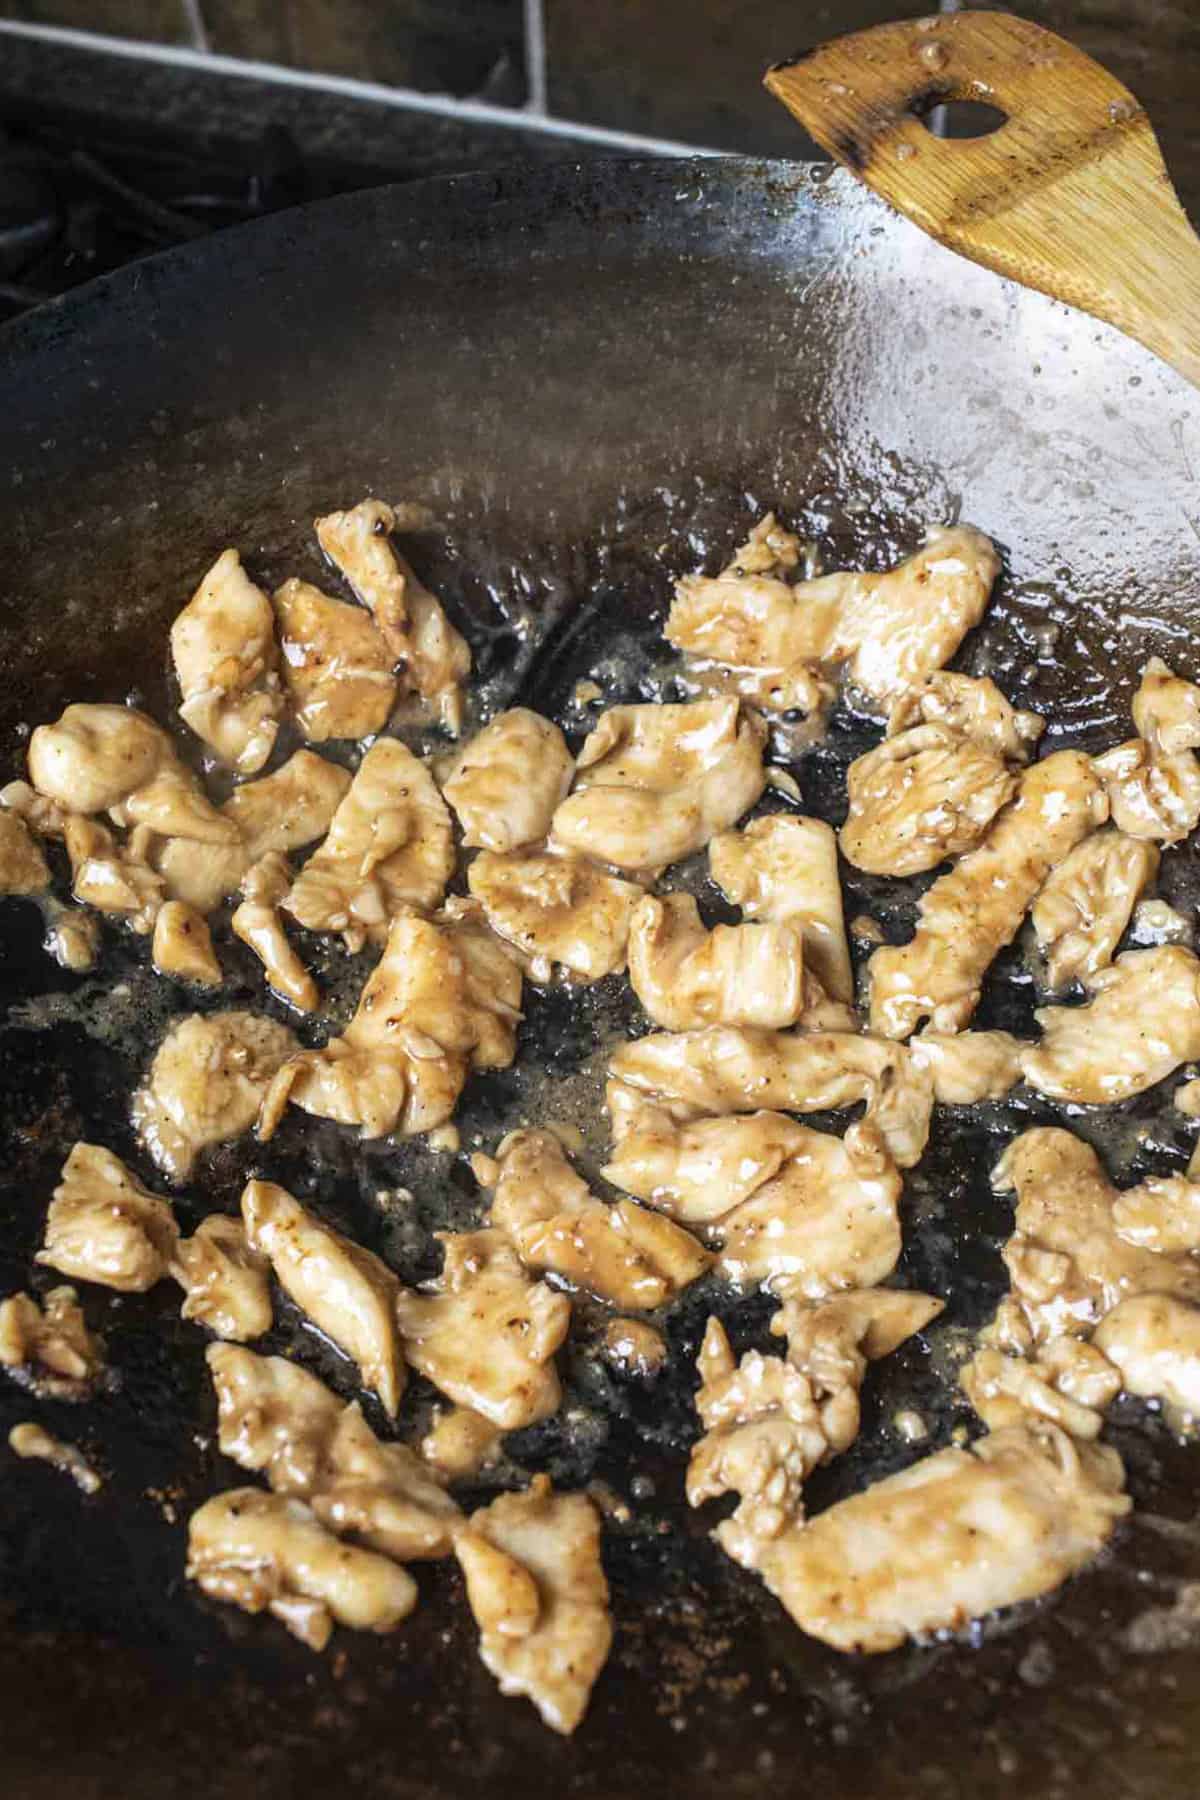 stir fry chicken pieces in a wok. 